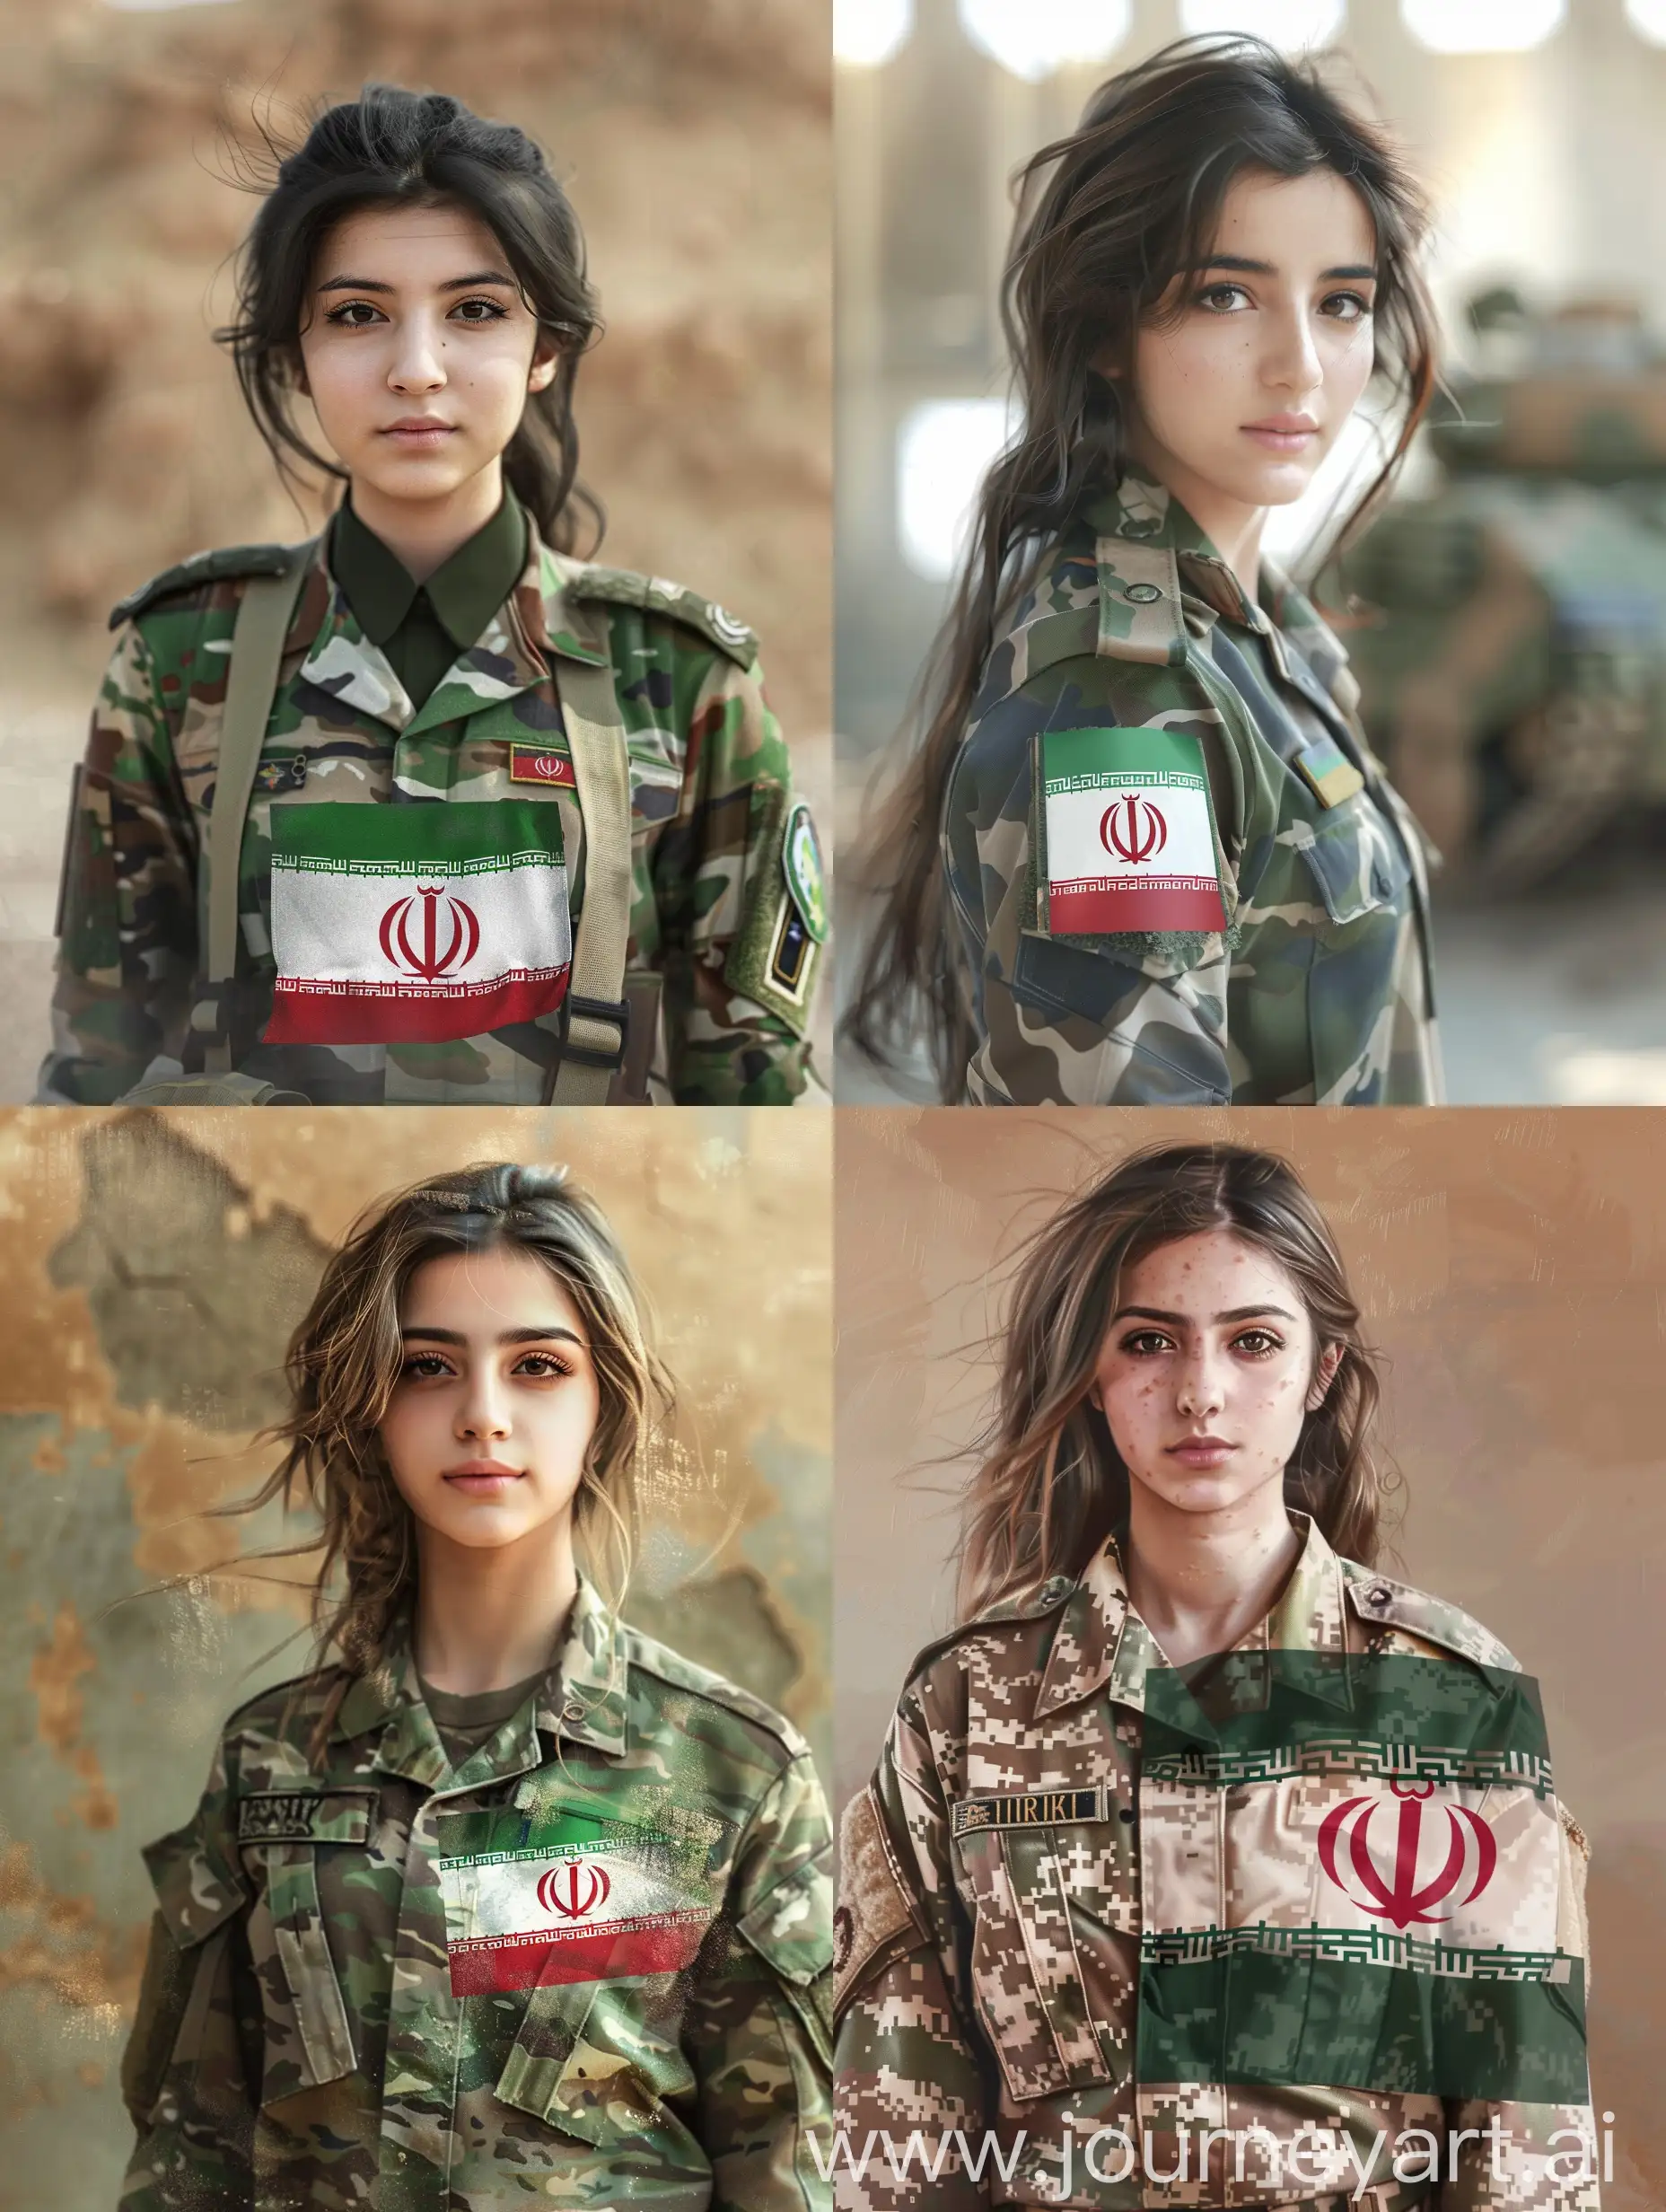 تصویر واقع گرایانه از یک دختر با لباس سربازی که پرچم ایران روی پیراهن آن است